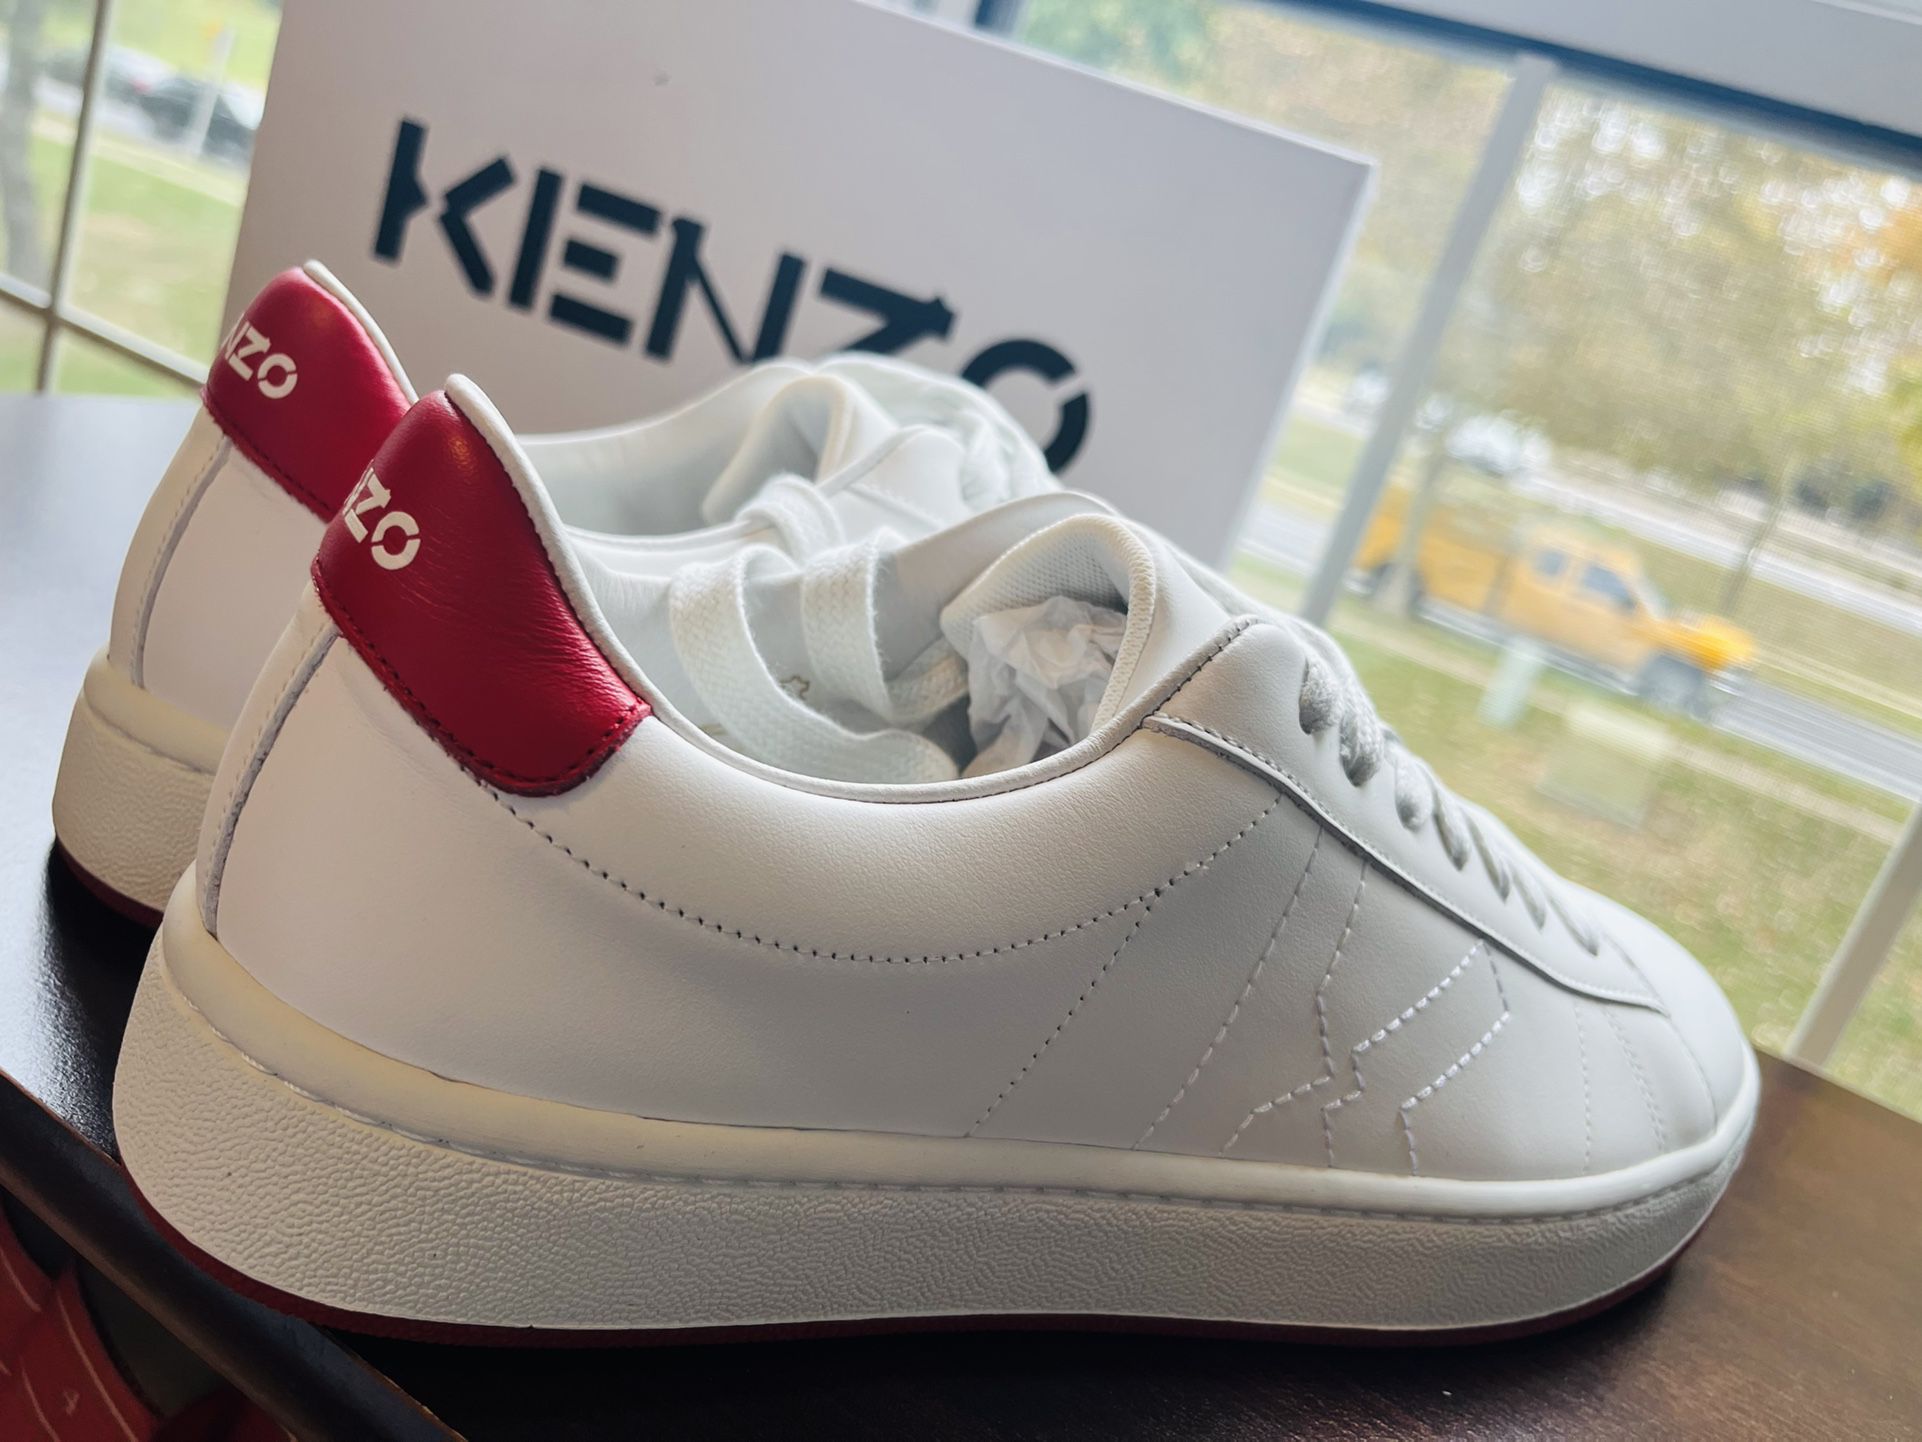 Kenzo Kourt Italian Sneakers Size 42 for Sale in Wheaton-glenmont, MD -  OfferUp